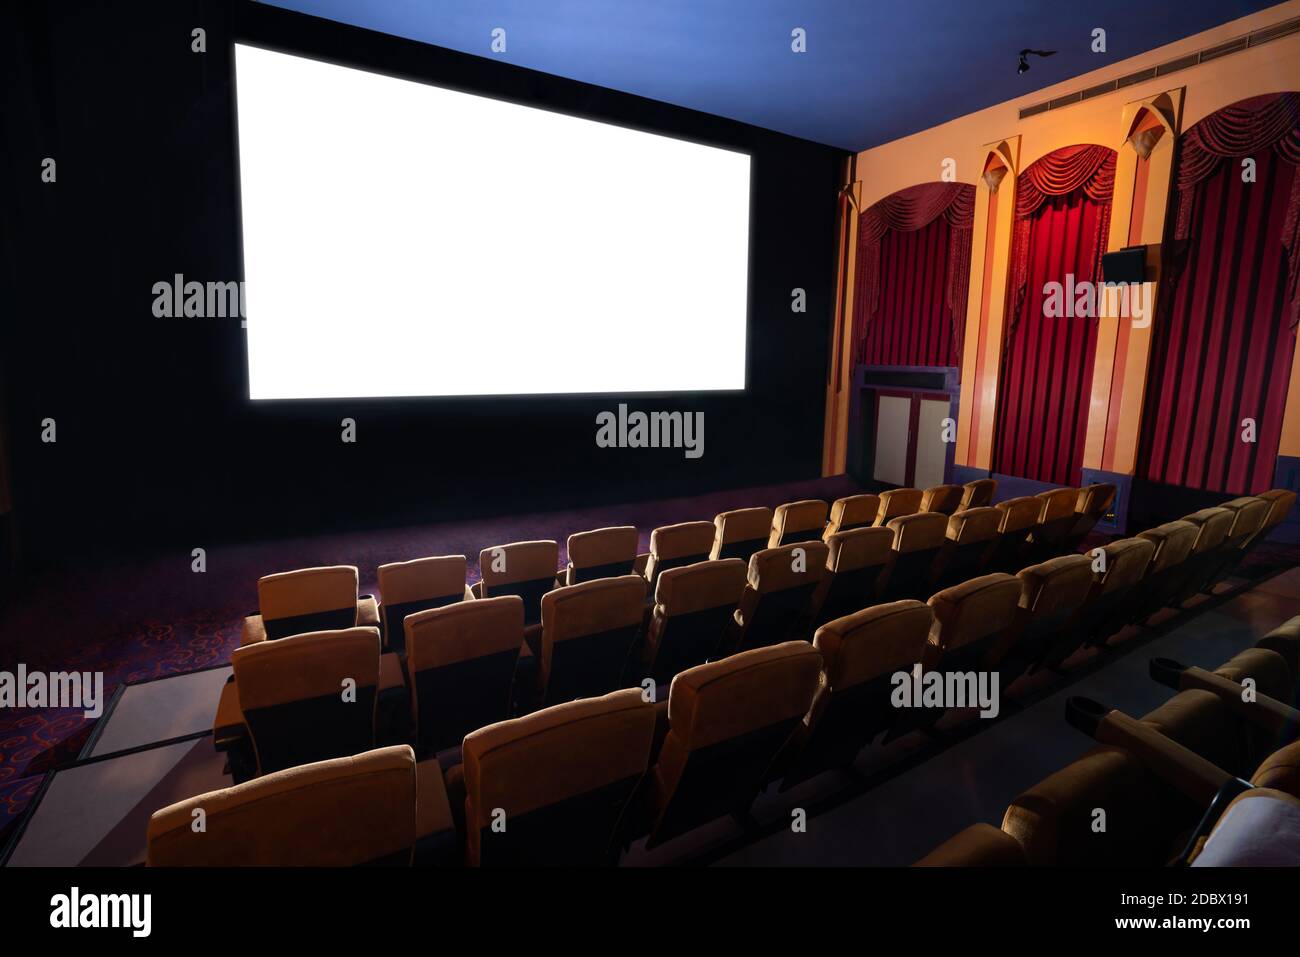 Kinoleinwand vor den Sitzreihen im Kino, auf der die weiße Leinwand vom Kinematographen projiziert wird. Das Kino ist eingerichtet Stockfoto